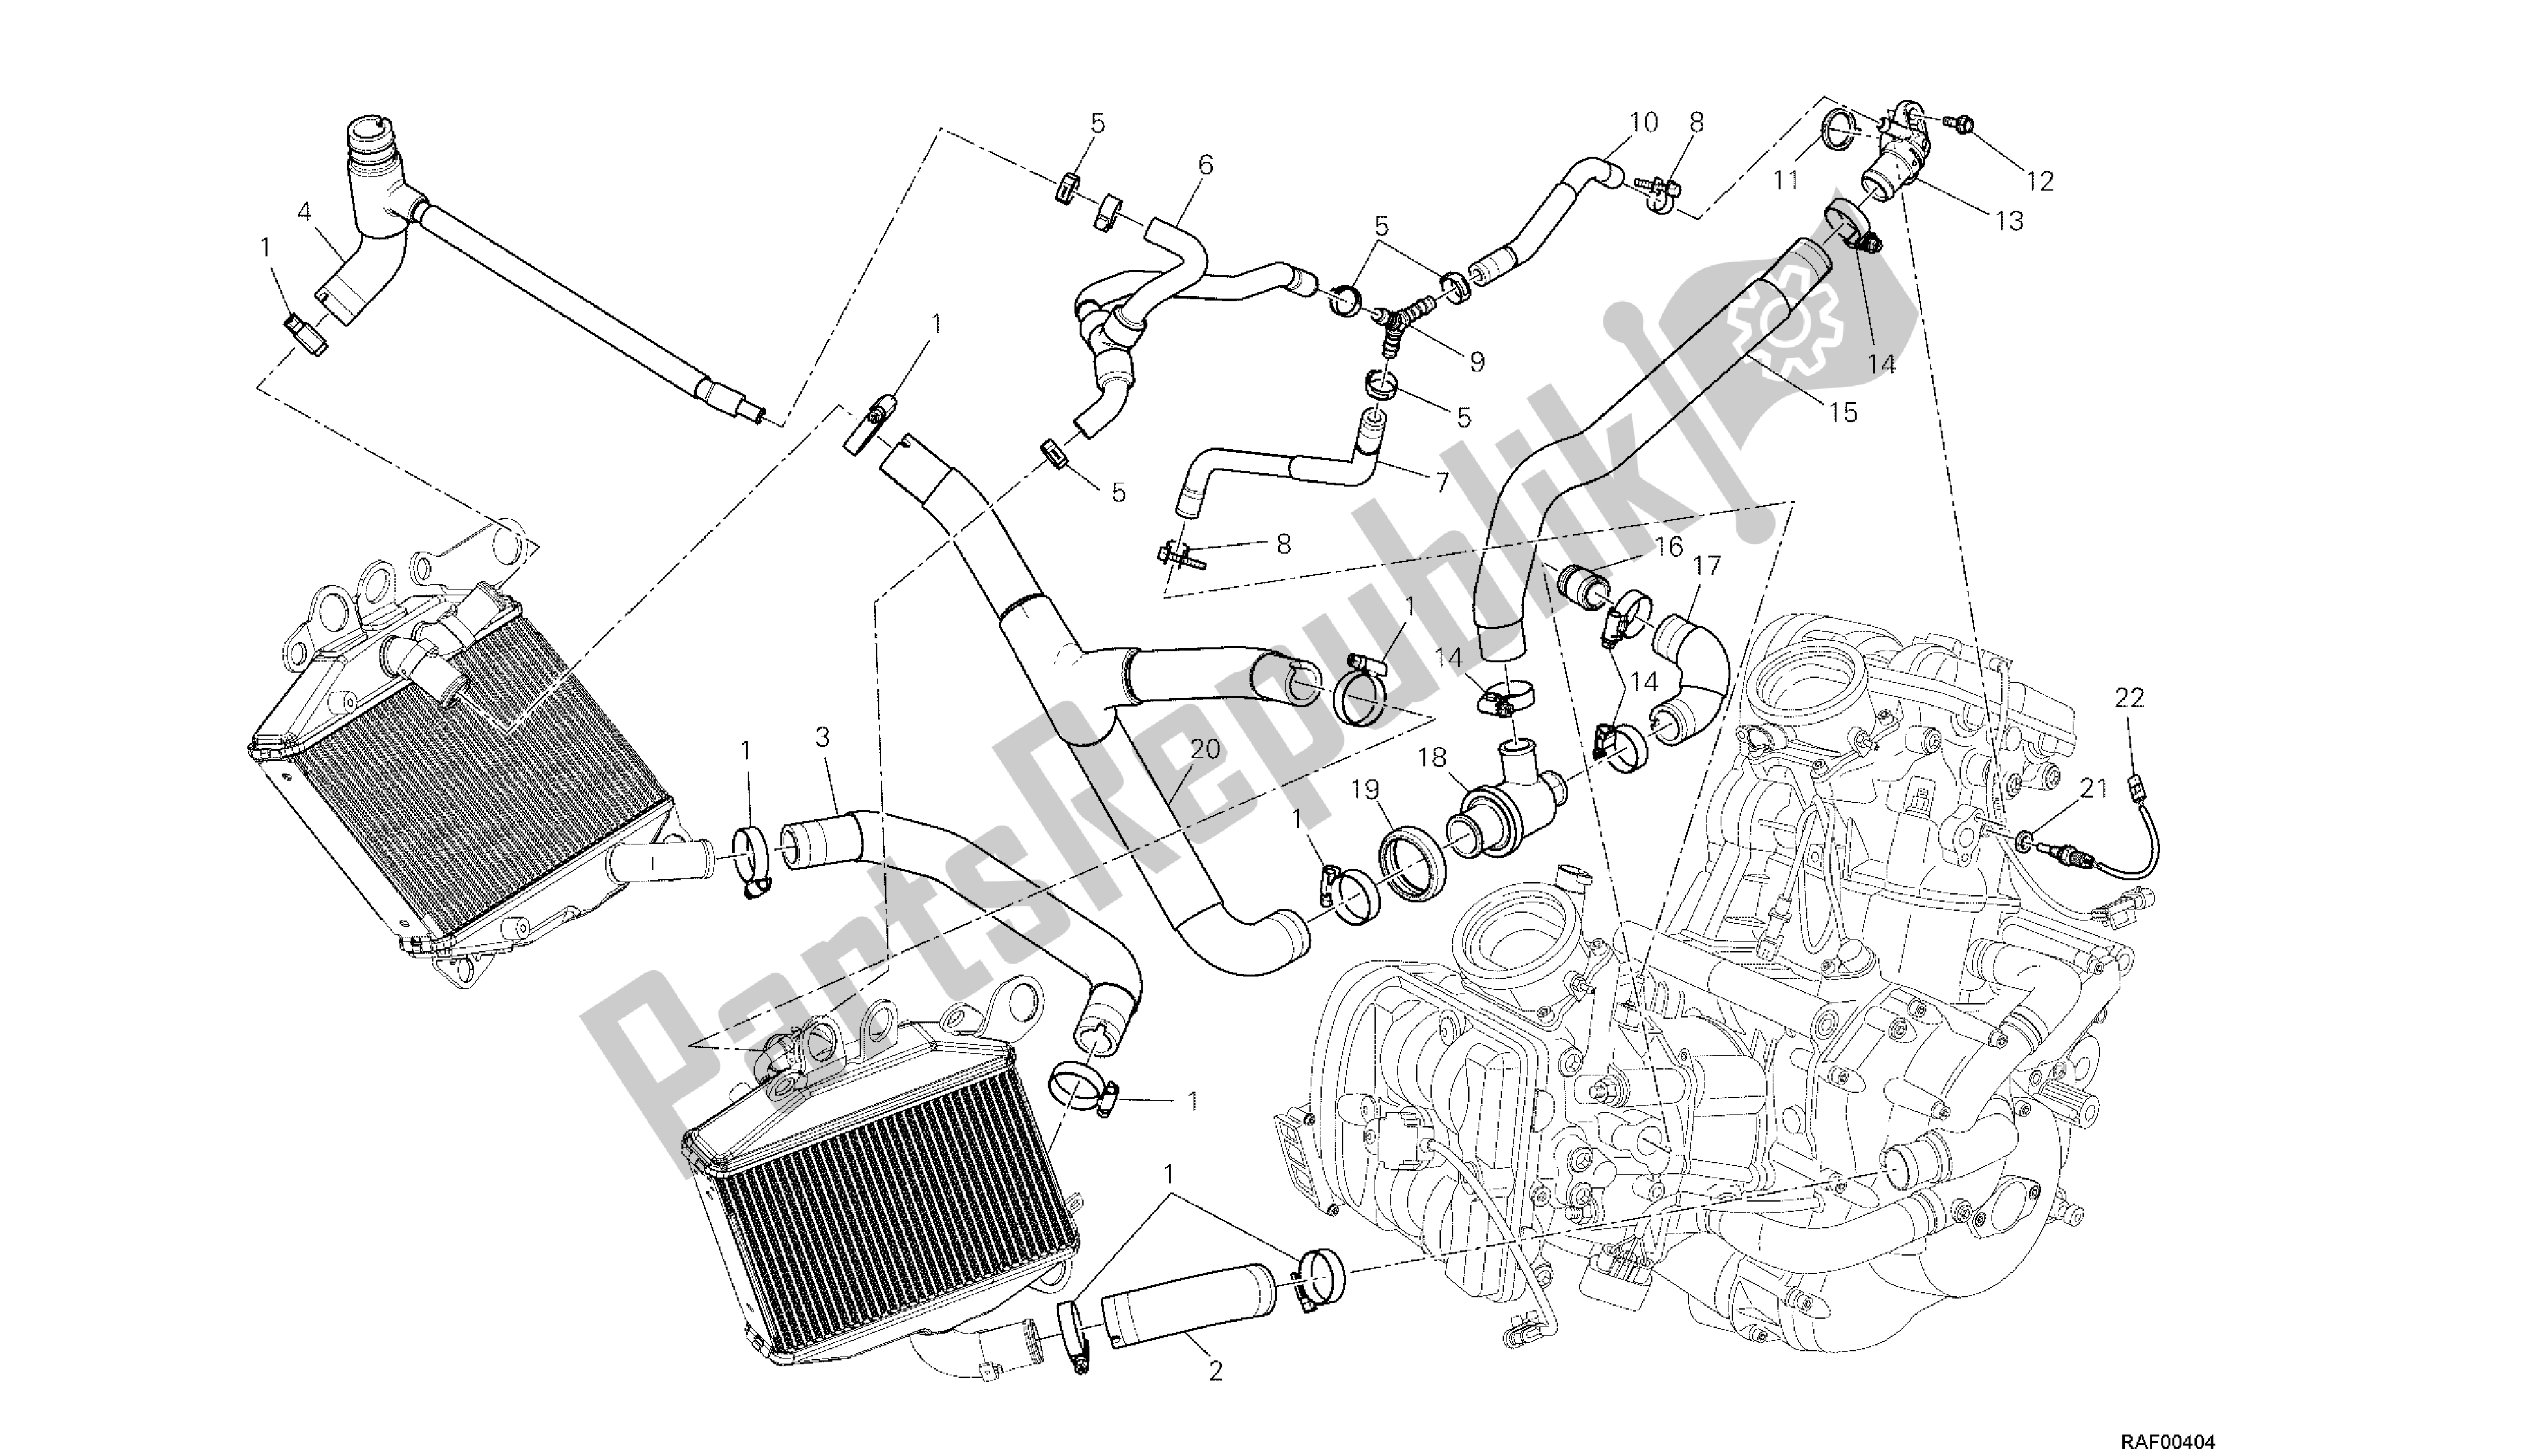 Todas las partes para Dibujo 031 - Circuito De Enfriamiento [m Od: Dvlc; Xst: Aus, Bra, Chn, Eur, Fra, Jap, Th Ai] Group Fr Ame de Ducati Diavel Carbon 1200 2013